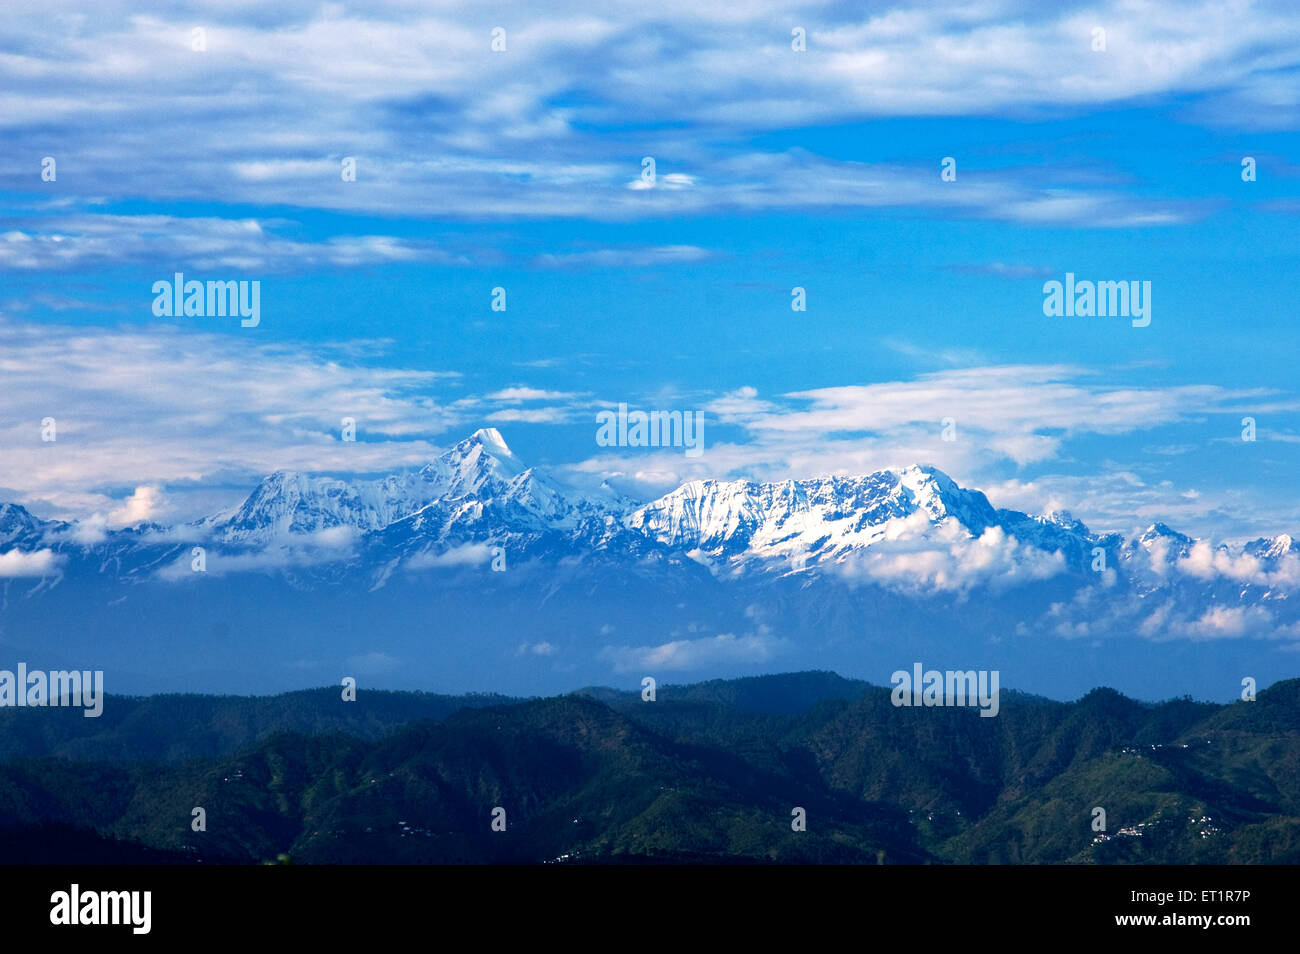 Himalaya mountains, himalayan mountain, Almora, Uttarakhand, India, Asia, Asian, Indian Stock Photo